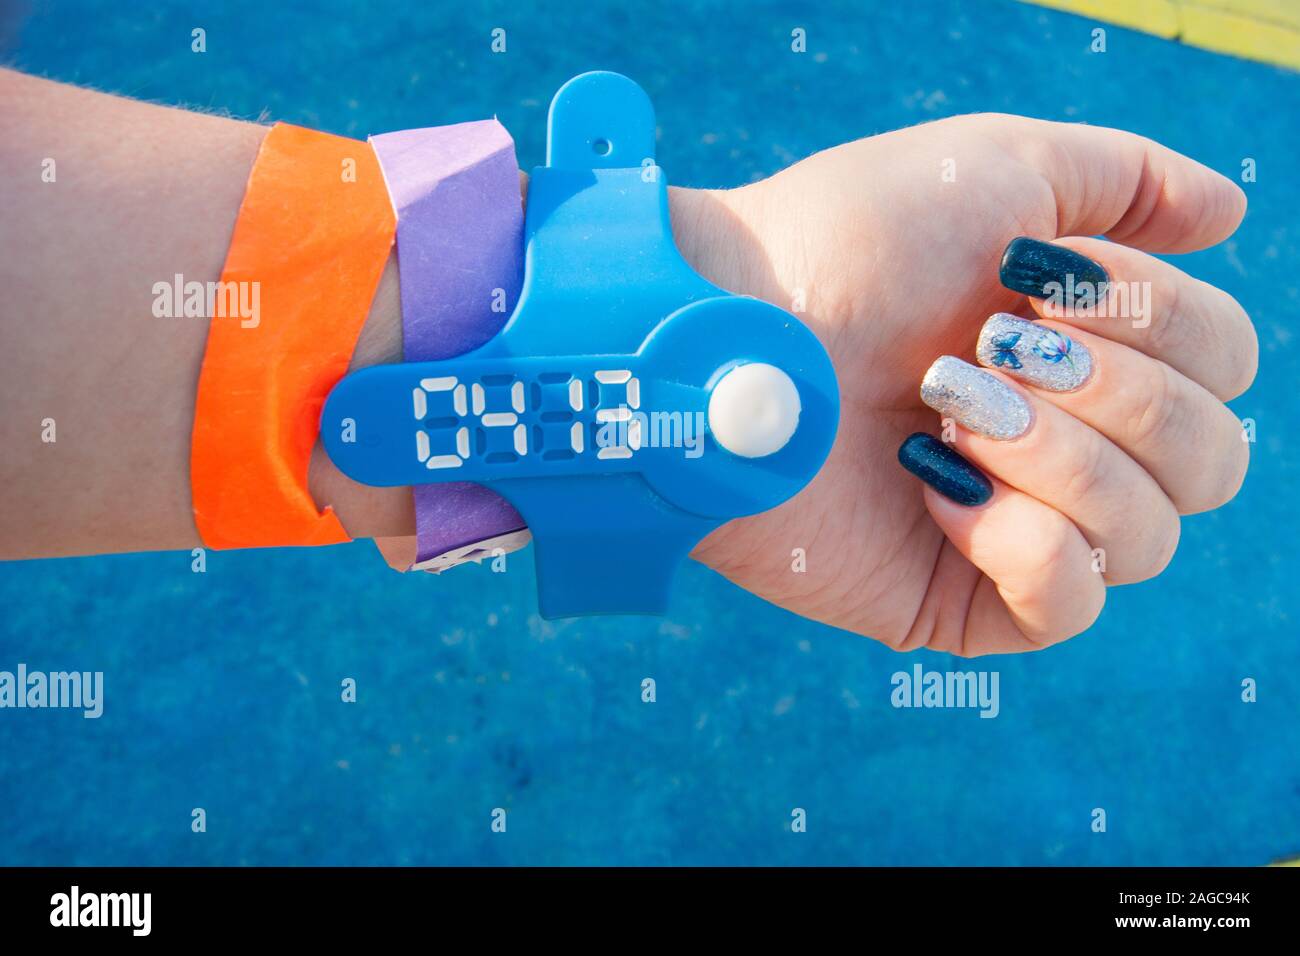 Die Stimmung Farbe blau ist - eine weibliche Hand gegen die blauen Boden in farbigen Armbänder aus dem Wasser park, Nägel sind auch in blau lackiert Stockfoto